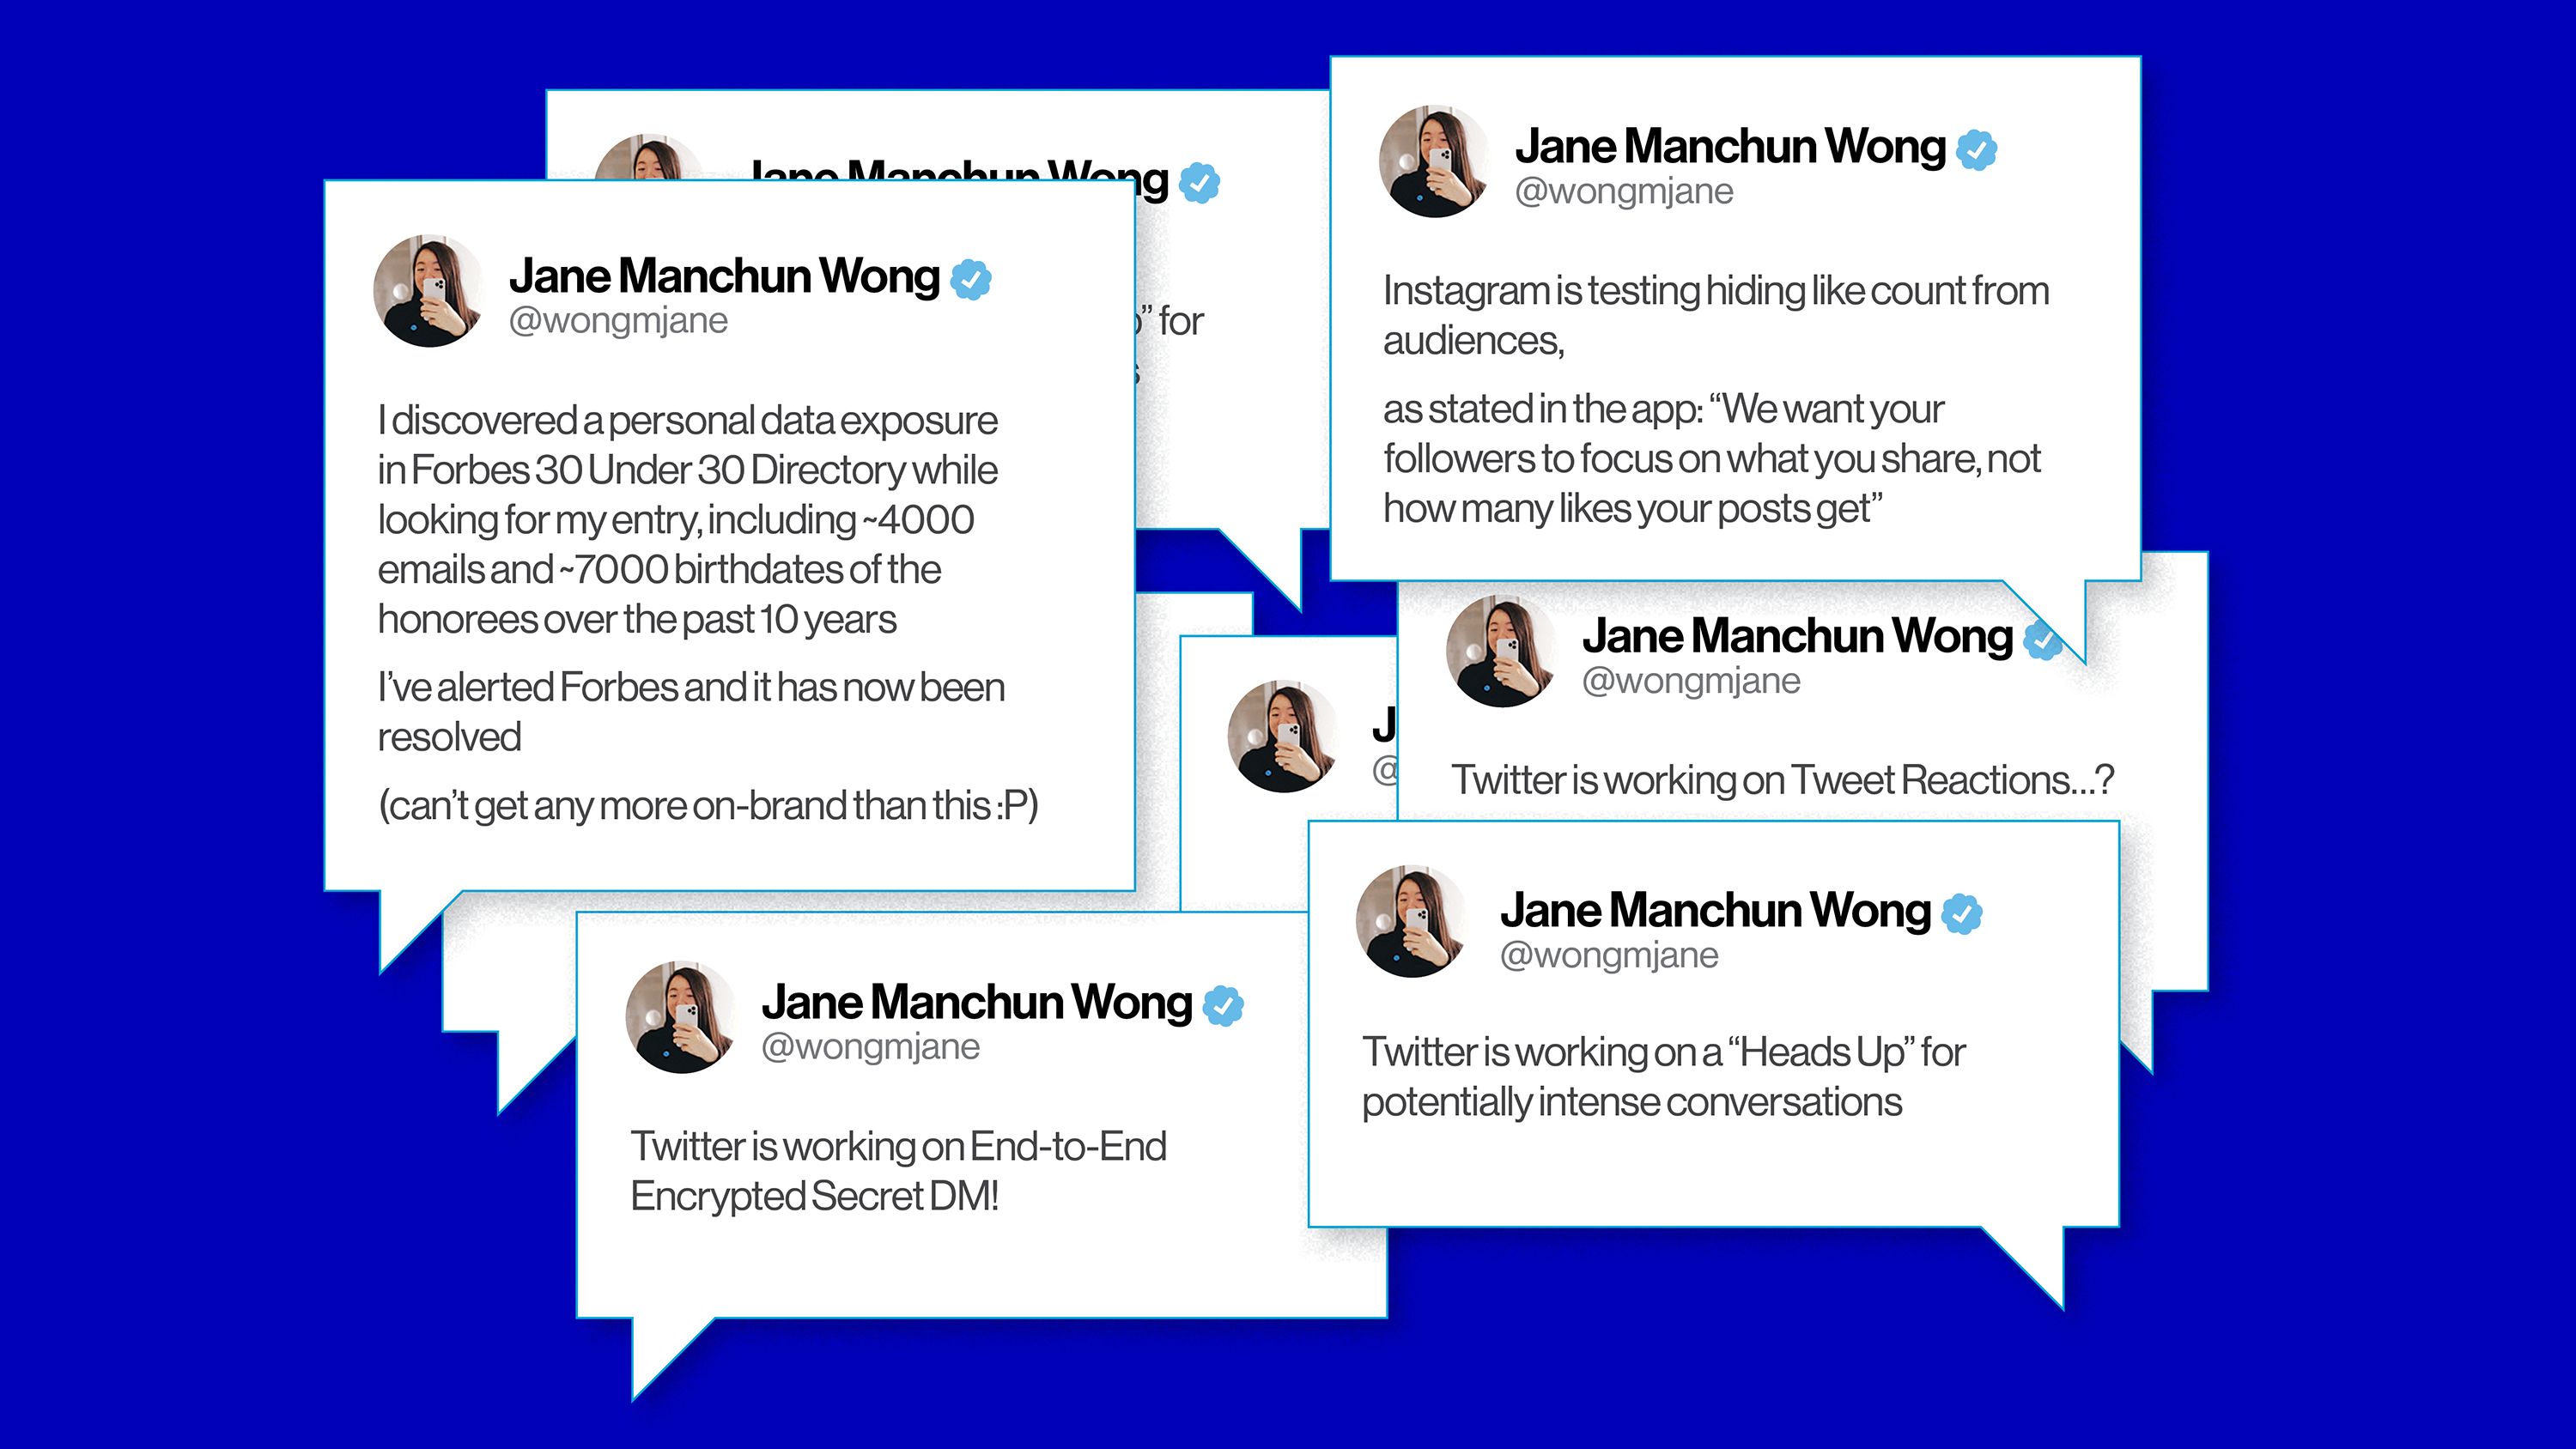 manchung wong tweets